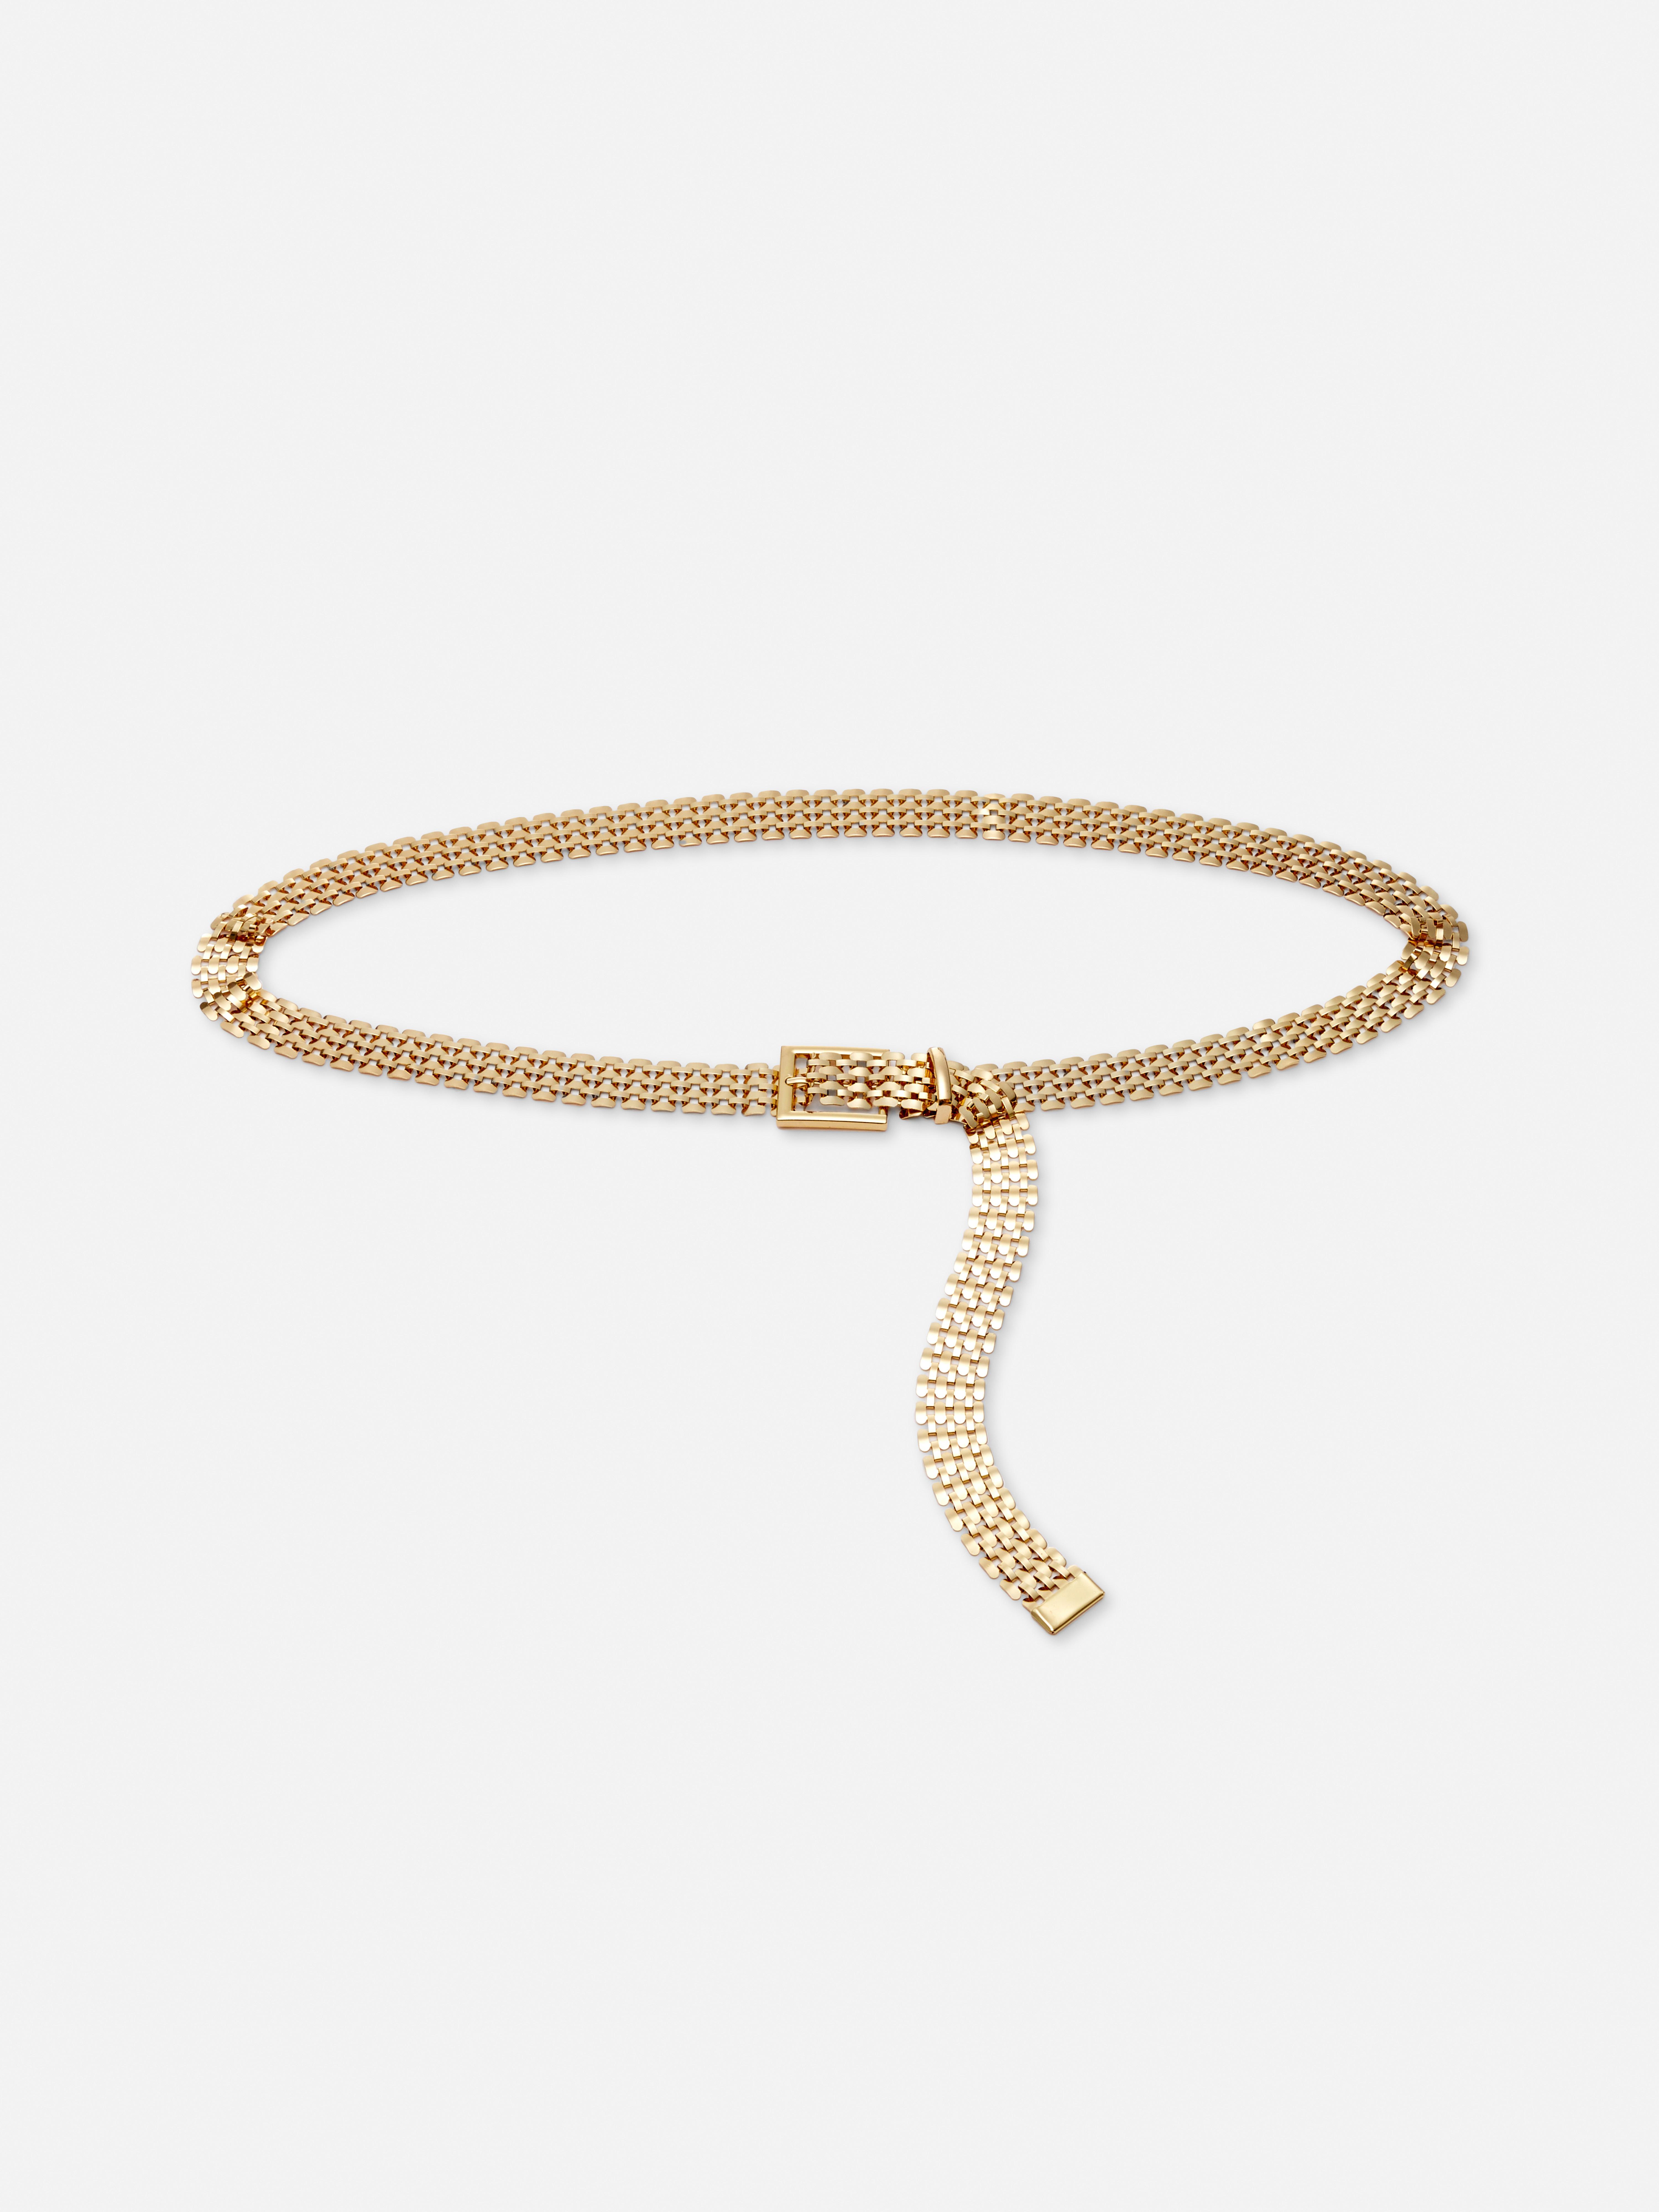 Cinturón dorado de cadena ajustable | Cinturones para mujer mujer | Nuestra línea de moda femenina | Todos los productos Primark | España